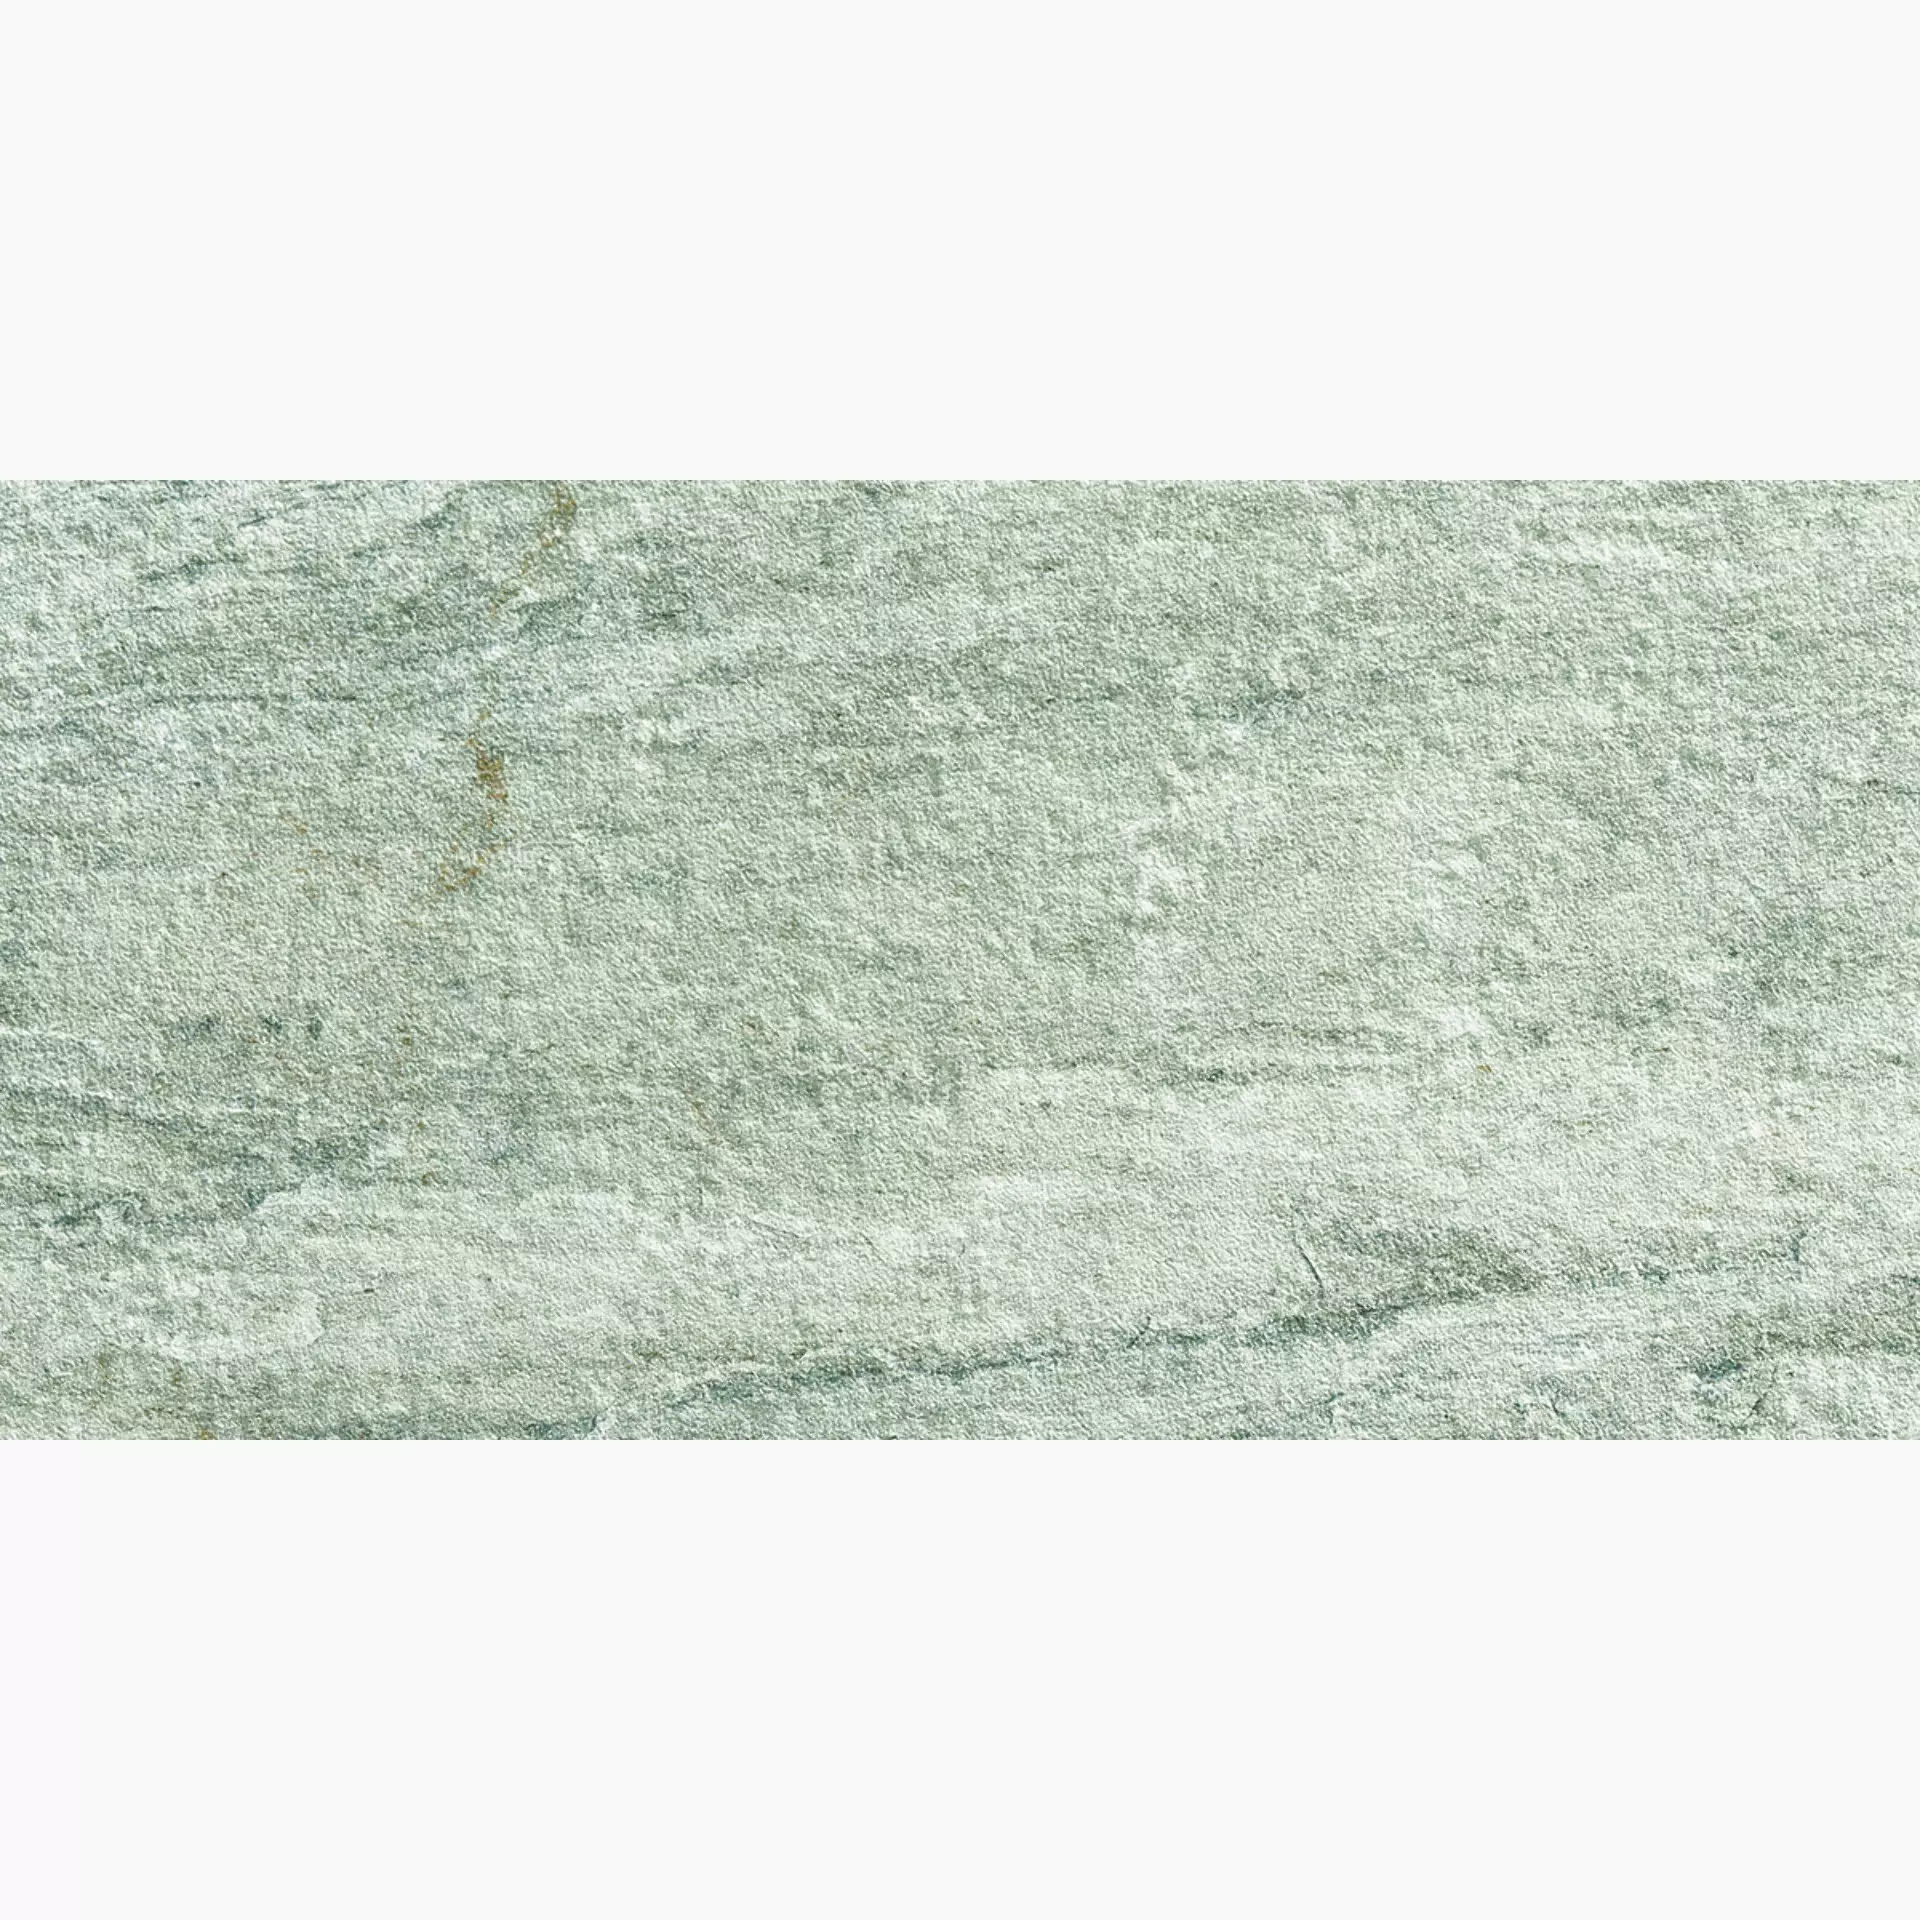 Alfalux Stone Quartz Perla Naturale 8201012 30x60cm rectified 9mm